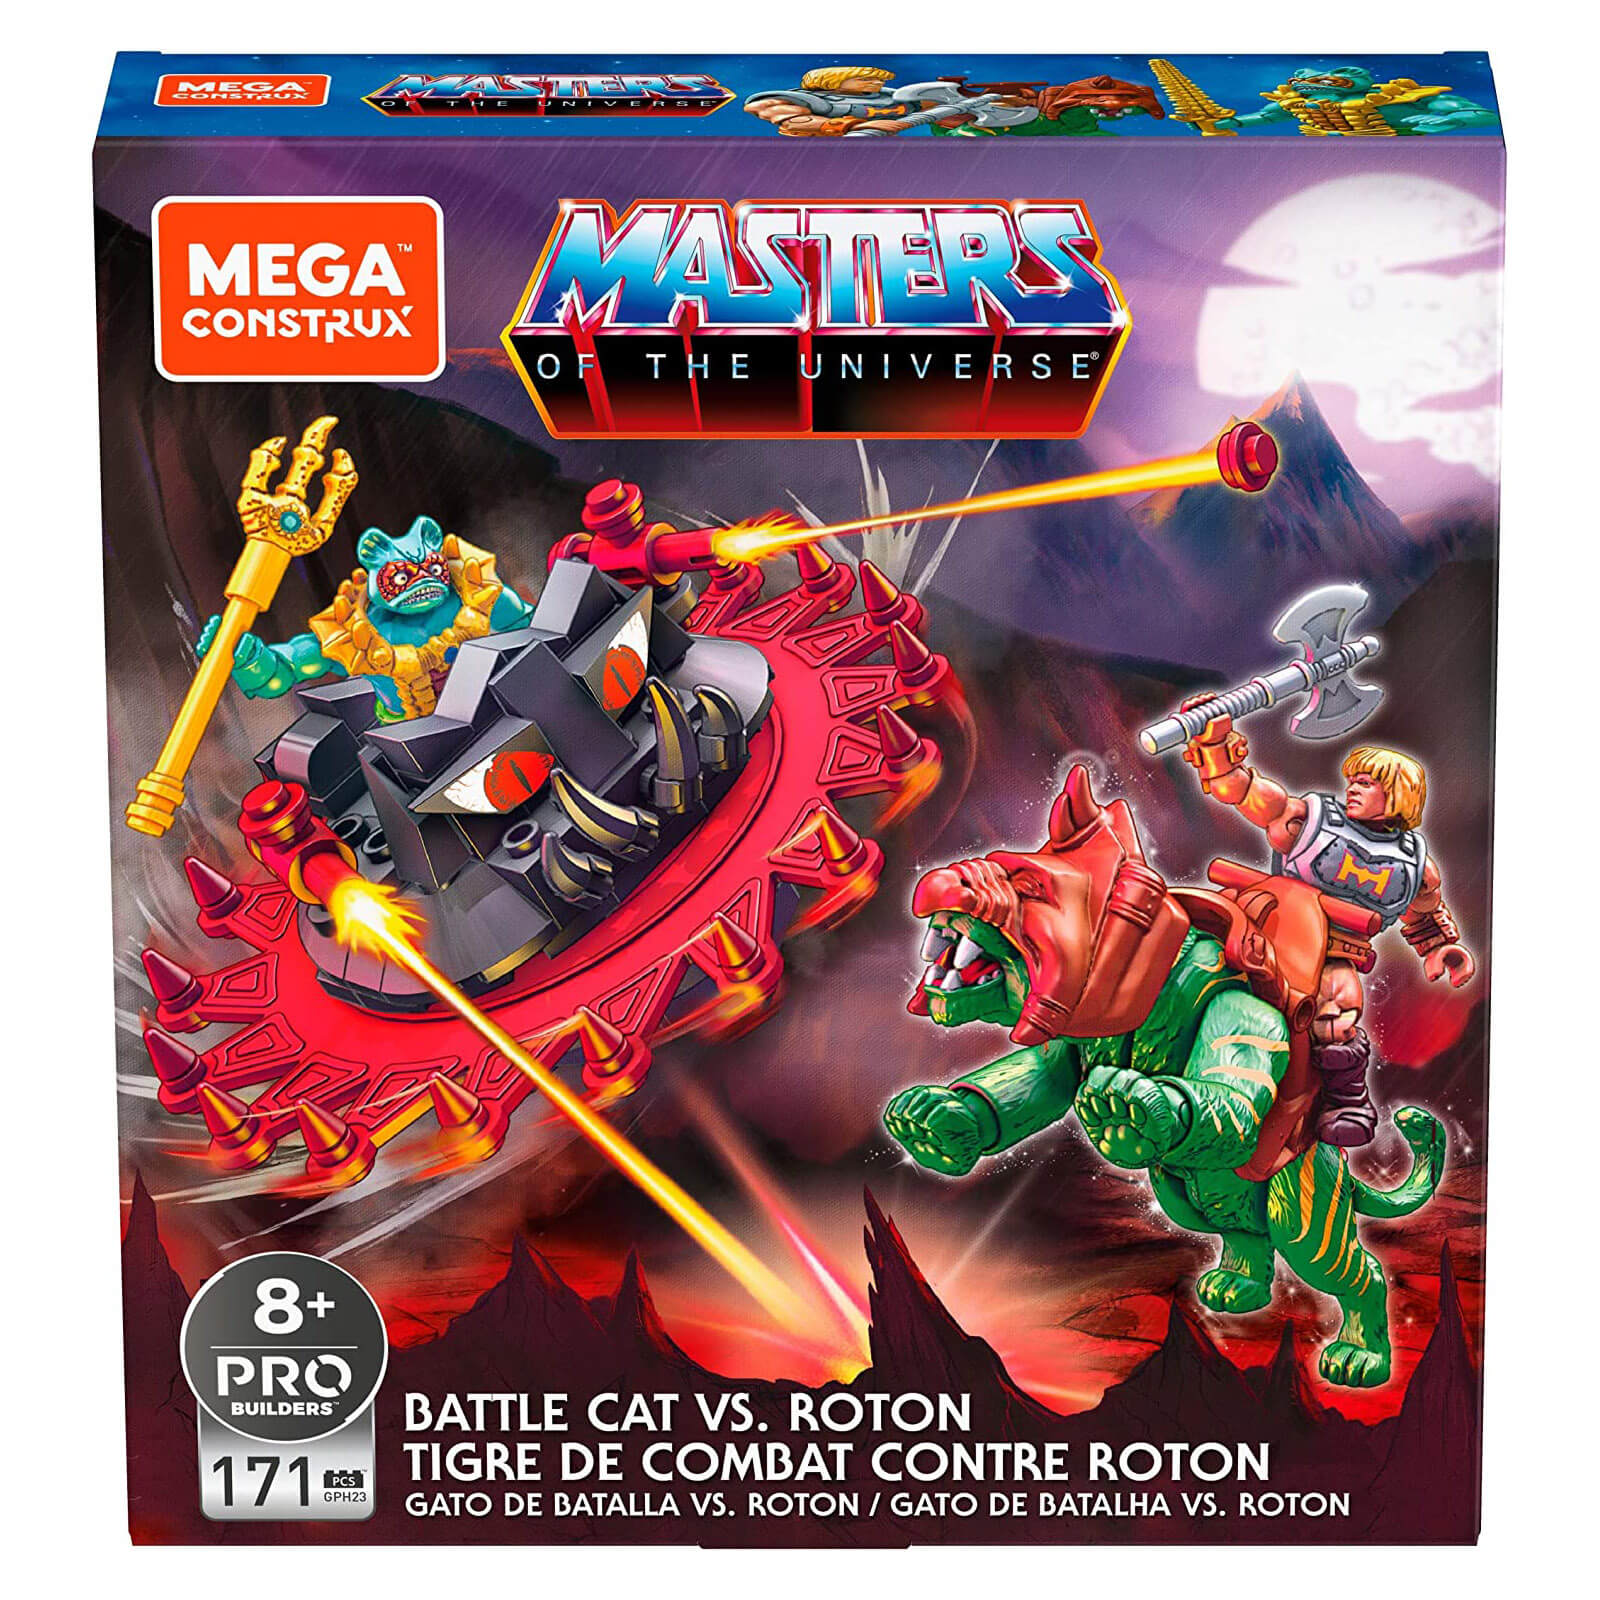 Mega Construx Masters of the Universe Battle Cat vs Roton 173 Piece Building Set